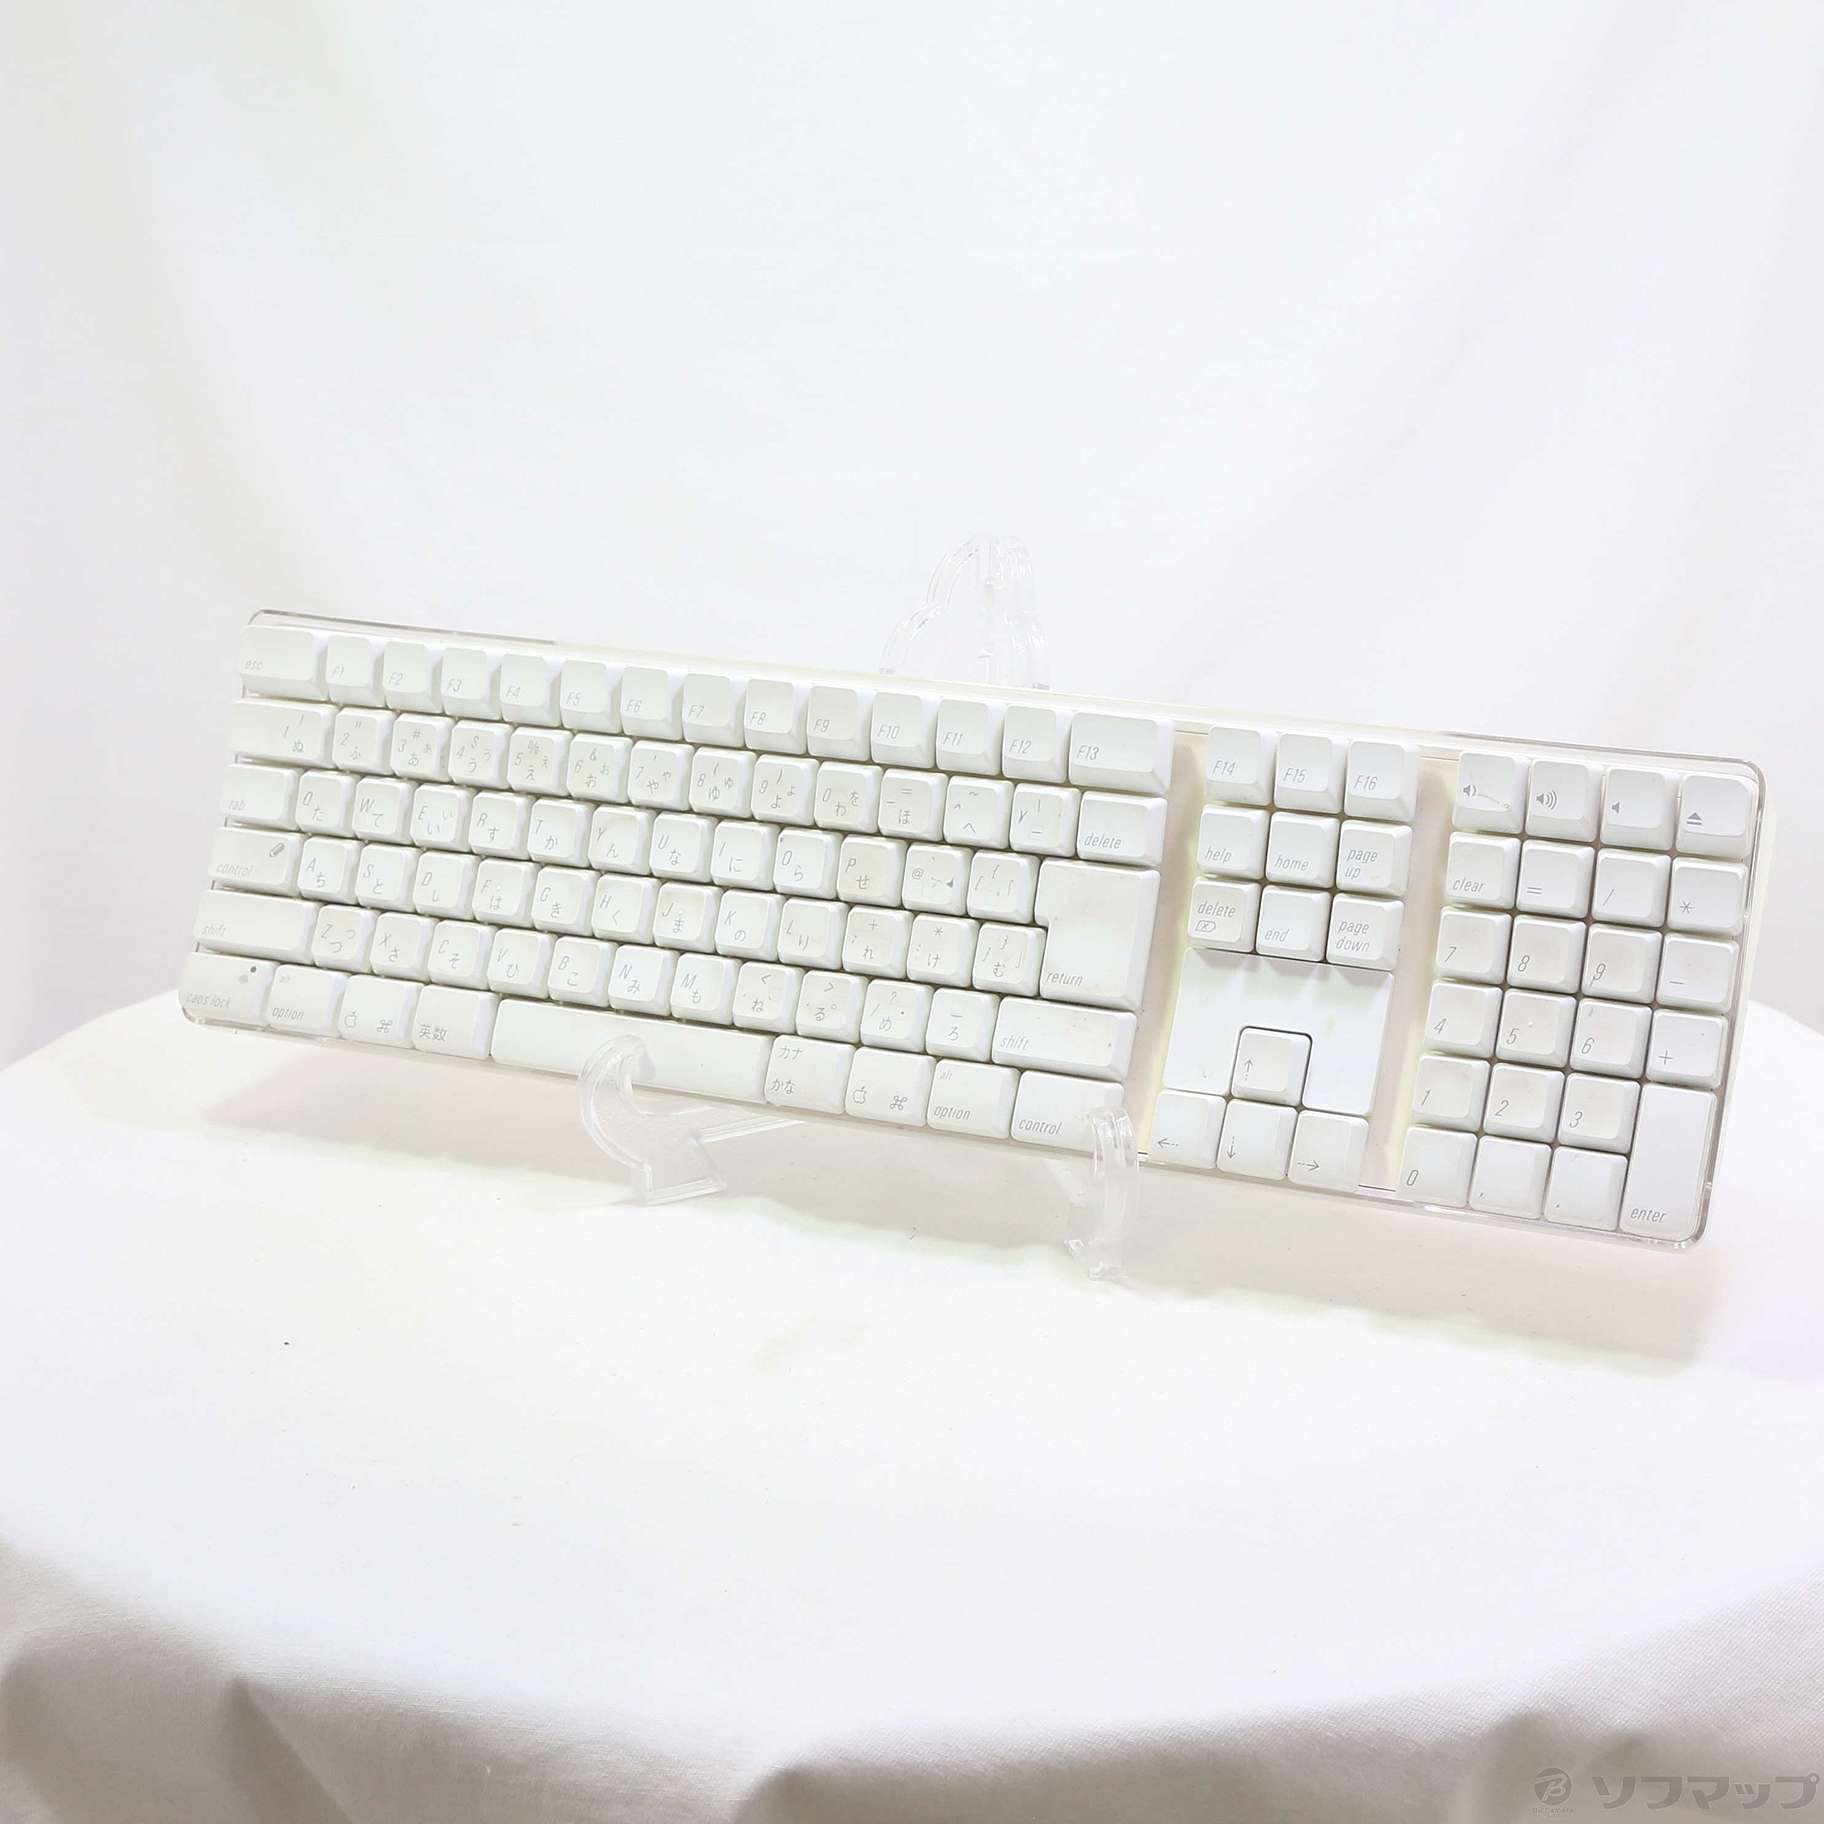 Apple Wireless Keyboard JIS